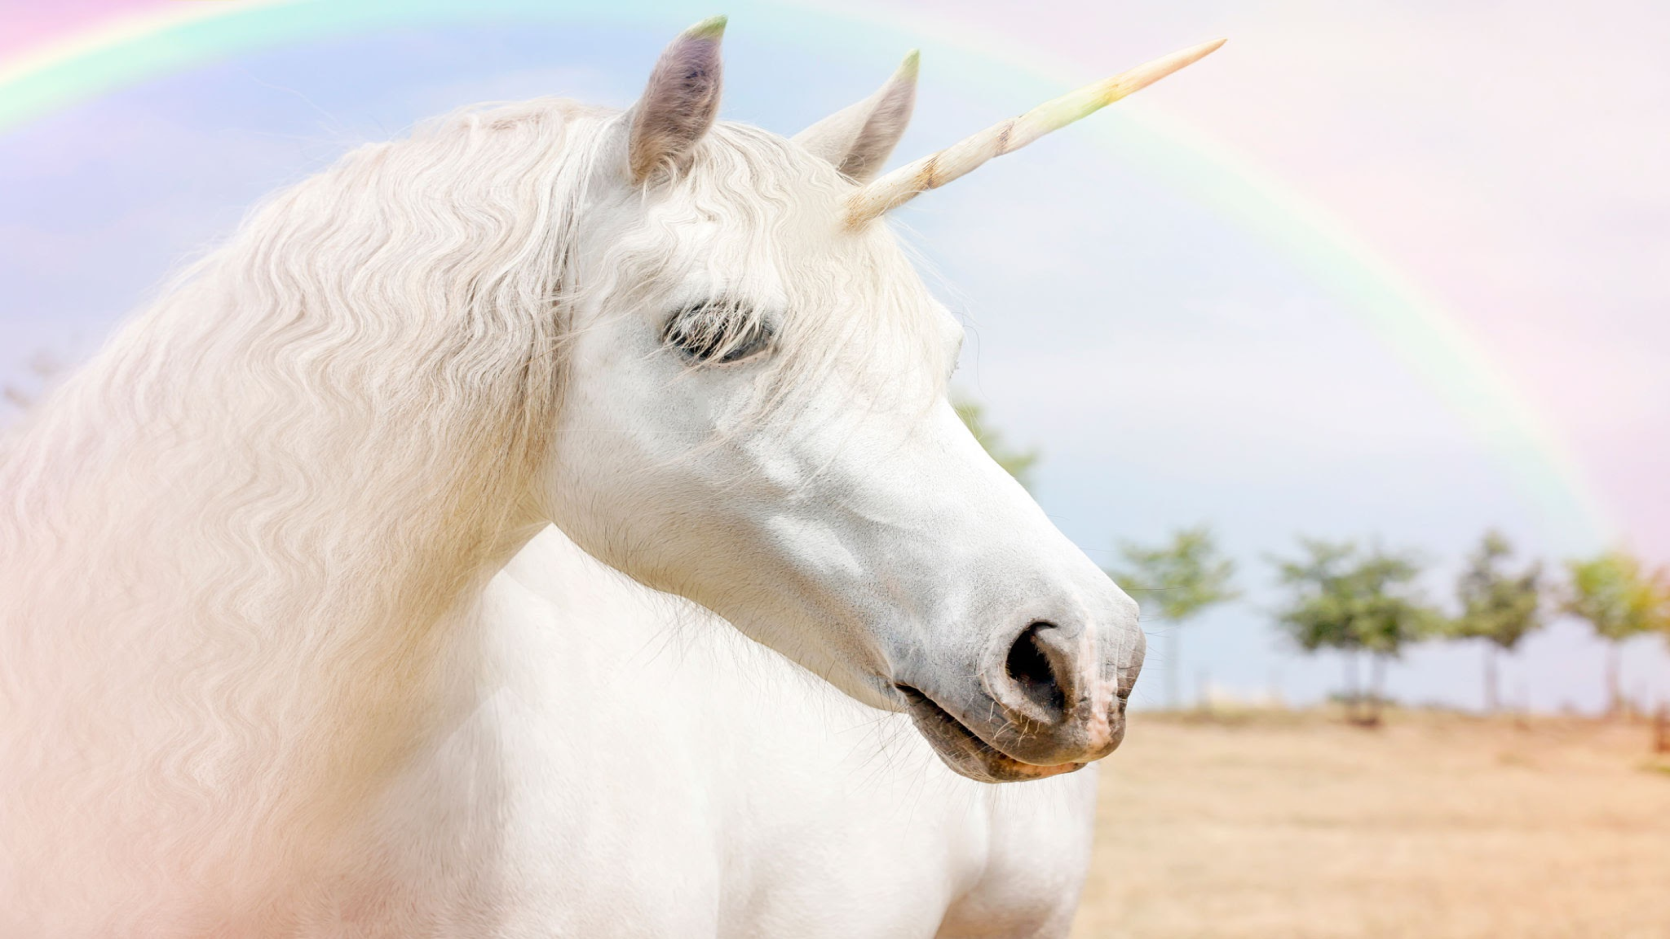 Unicorn with rainbow